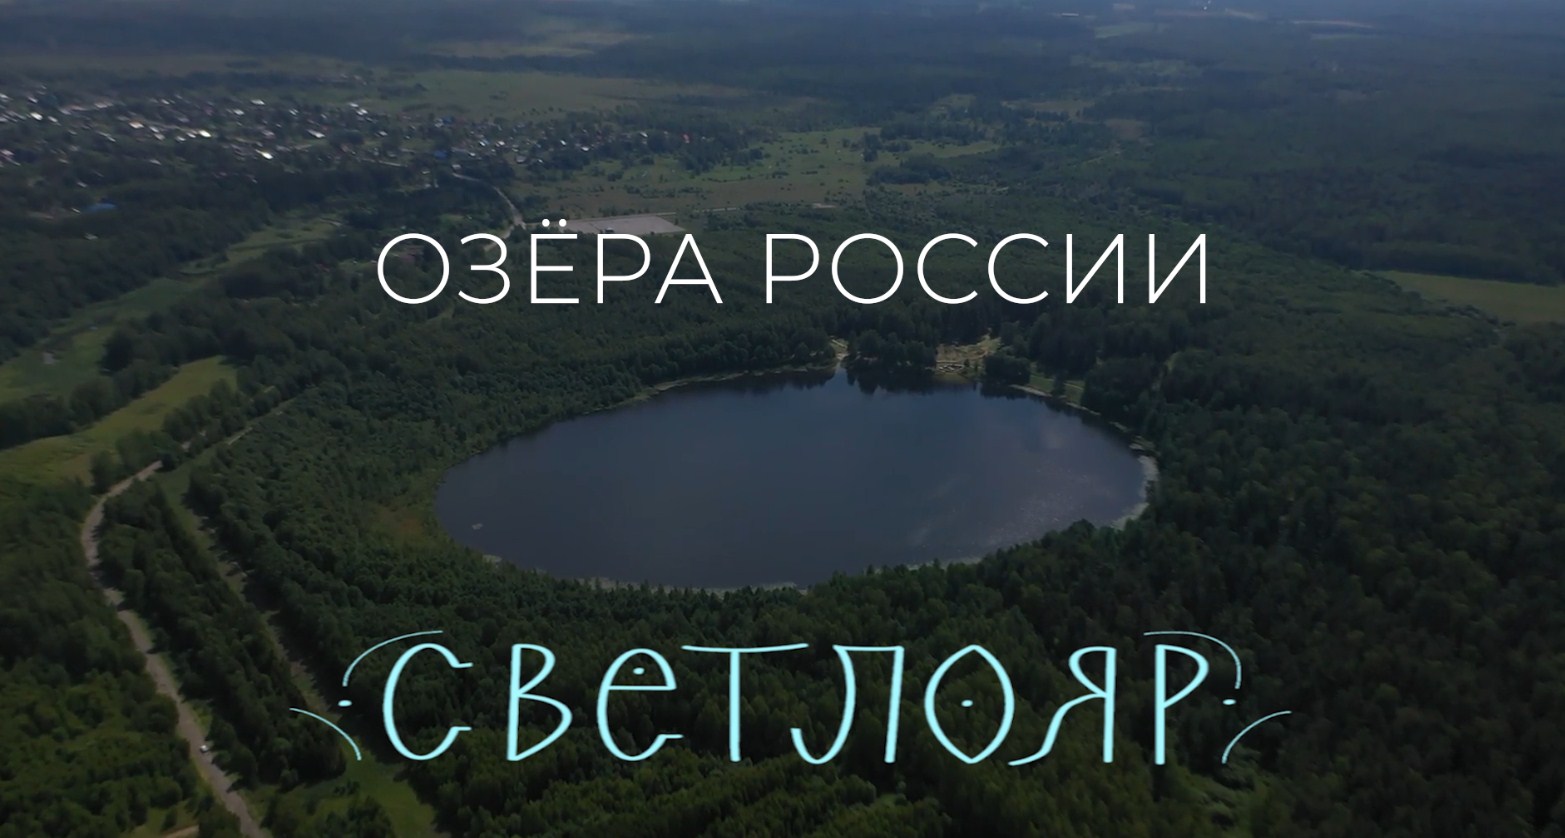 Озёра России. Светлояр